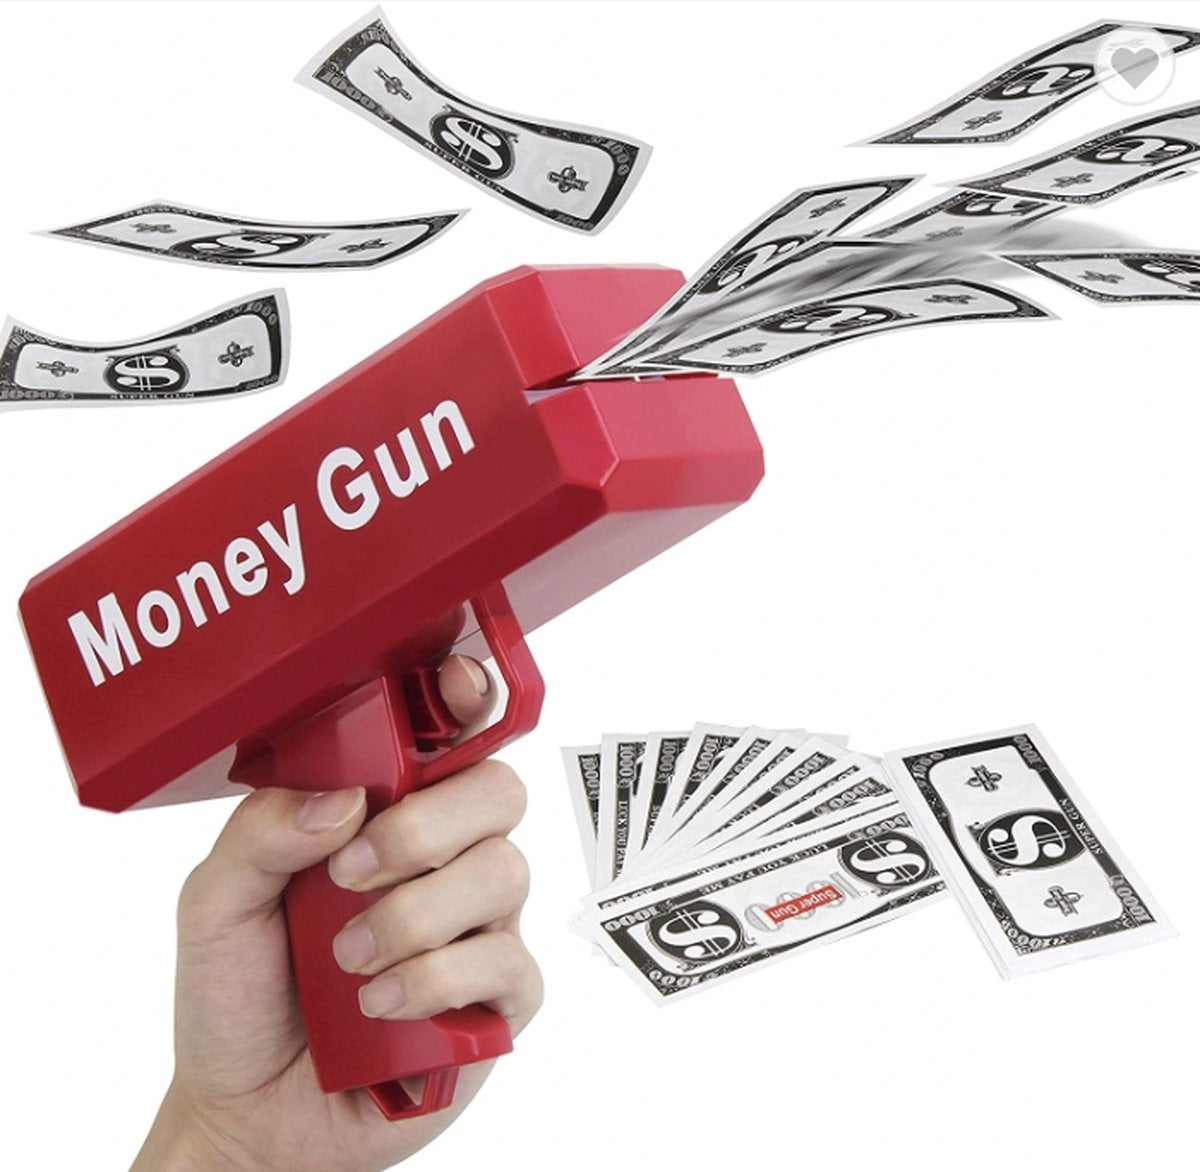 Money Gun